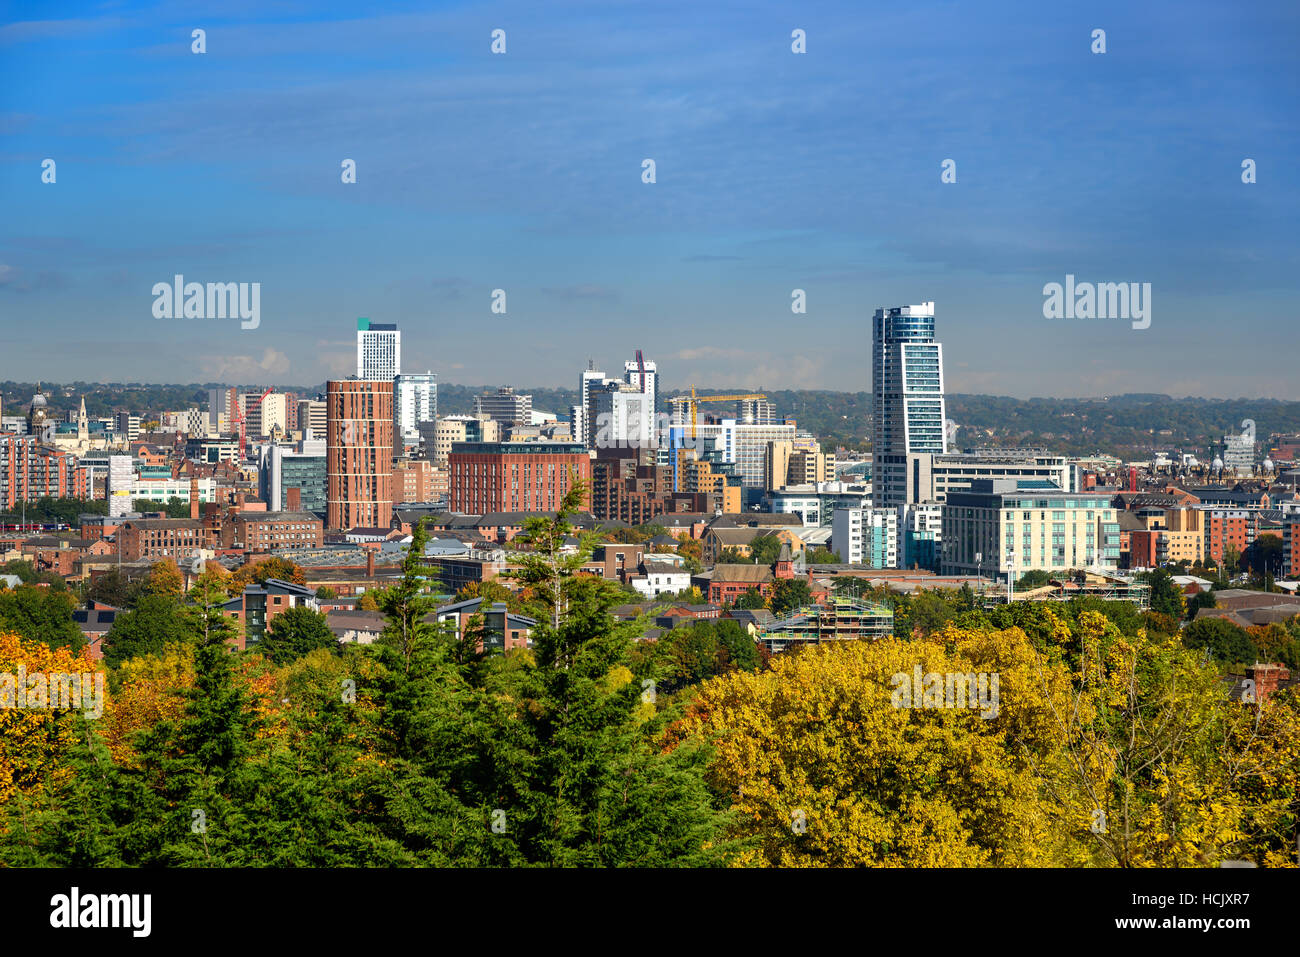 El horizonte de la ciudad de Leeds, Yorkshire, Reino Unido. Foto de stock